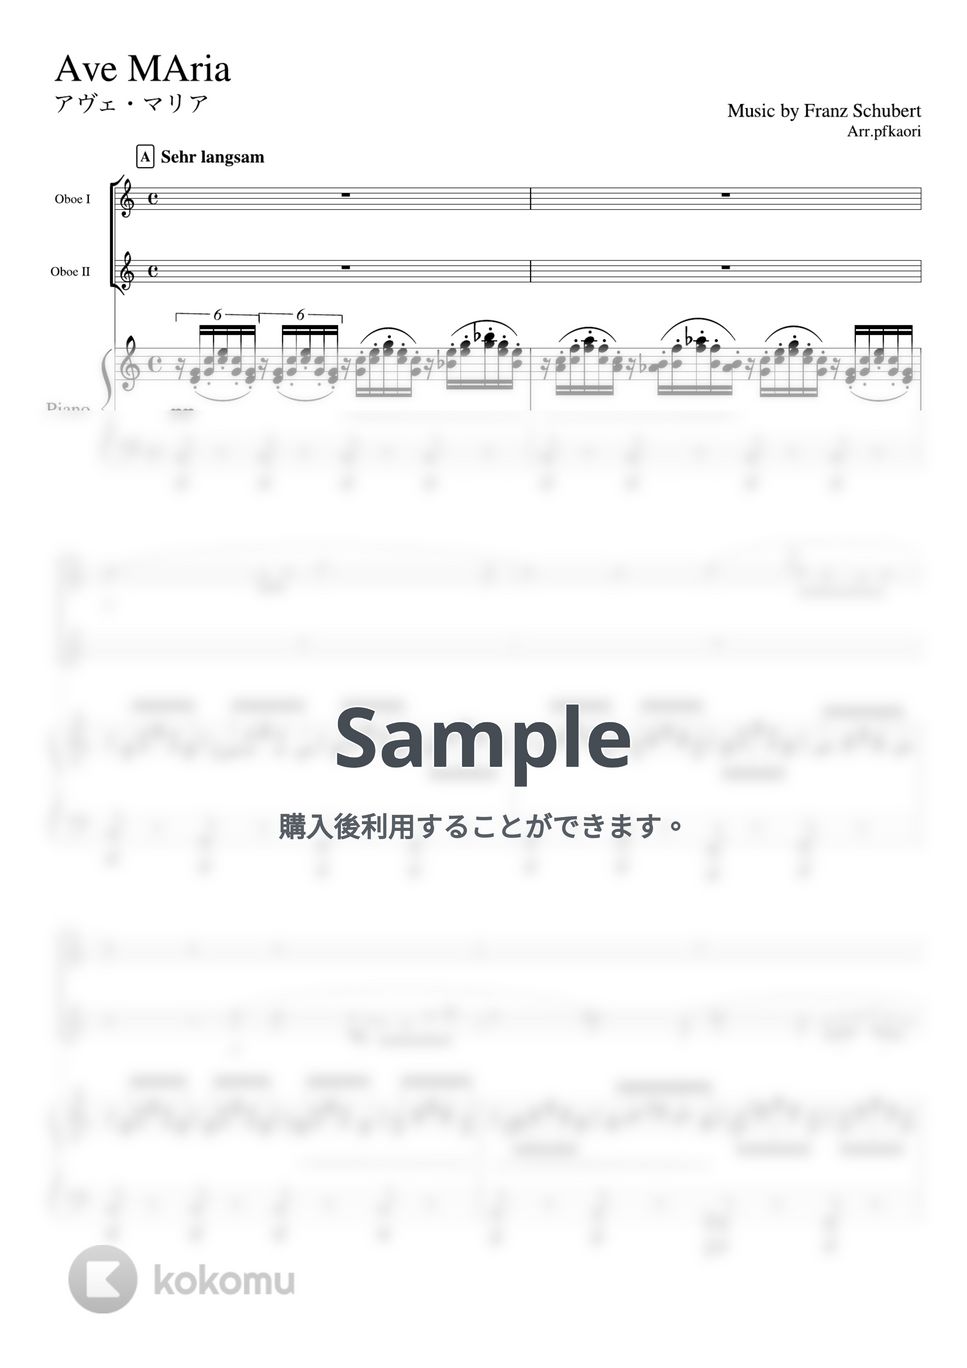 シューベルト - アヴェマリア (C・ピアノトリオ/オーボエ二重奏) by pfkaori